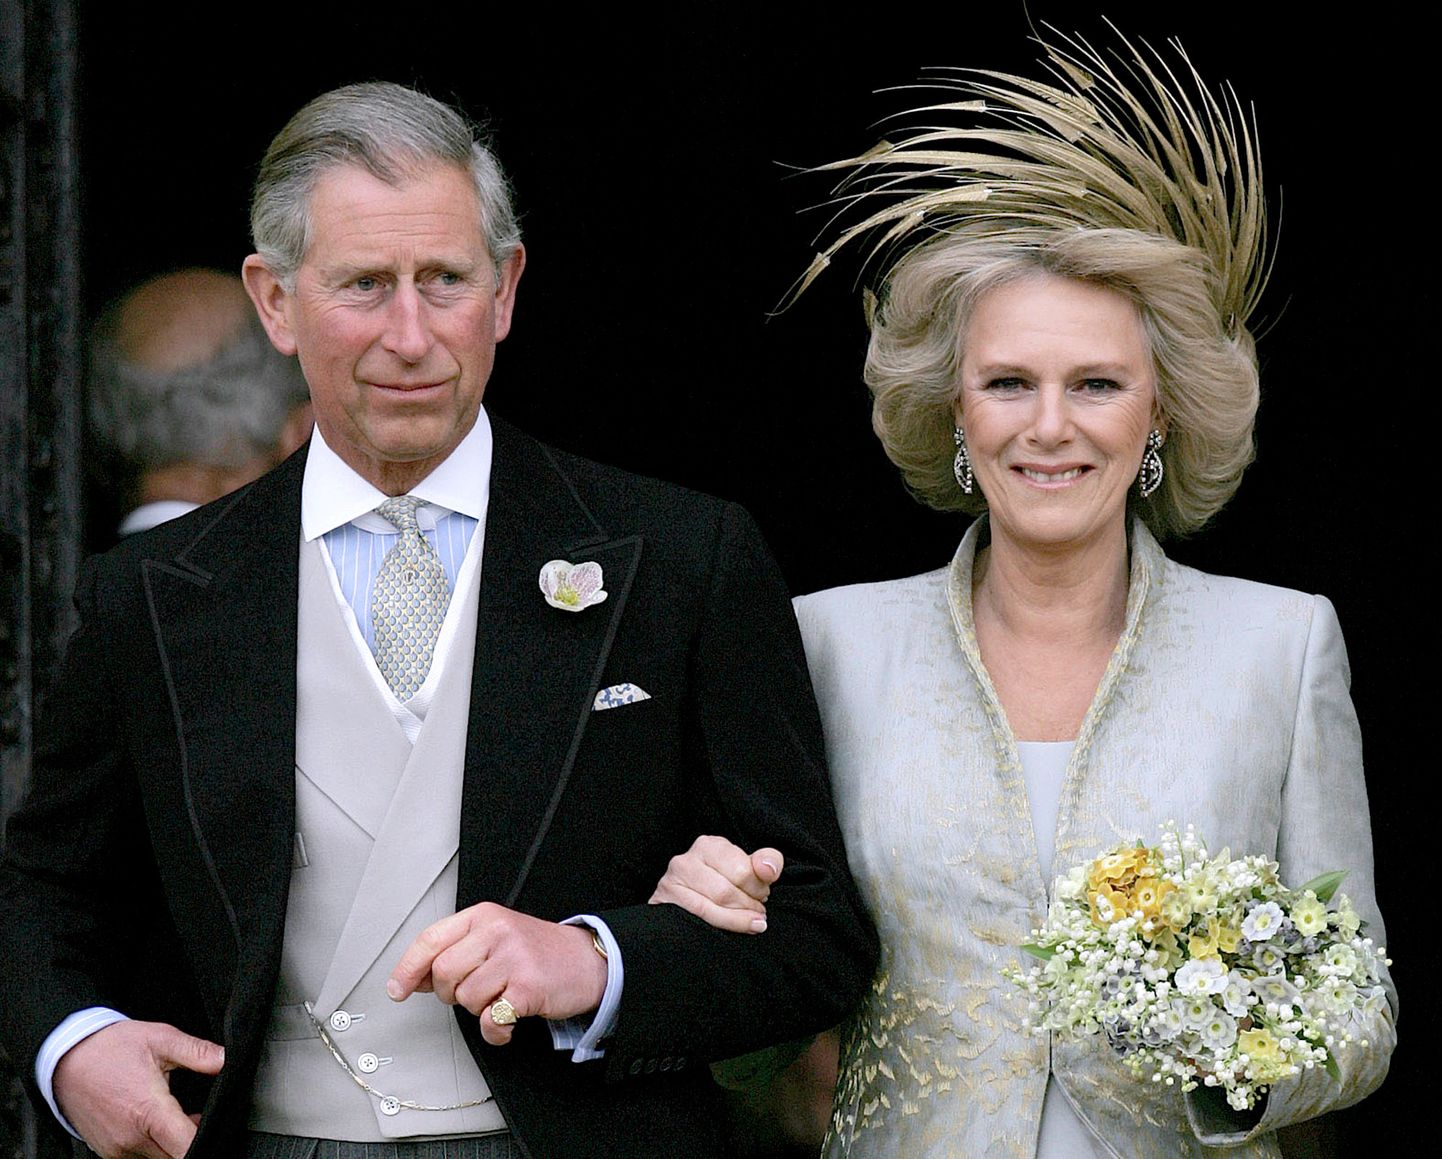 Charles ja Camilla sõlmisid ametliku liidu 2005. aastal